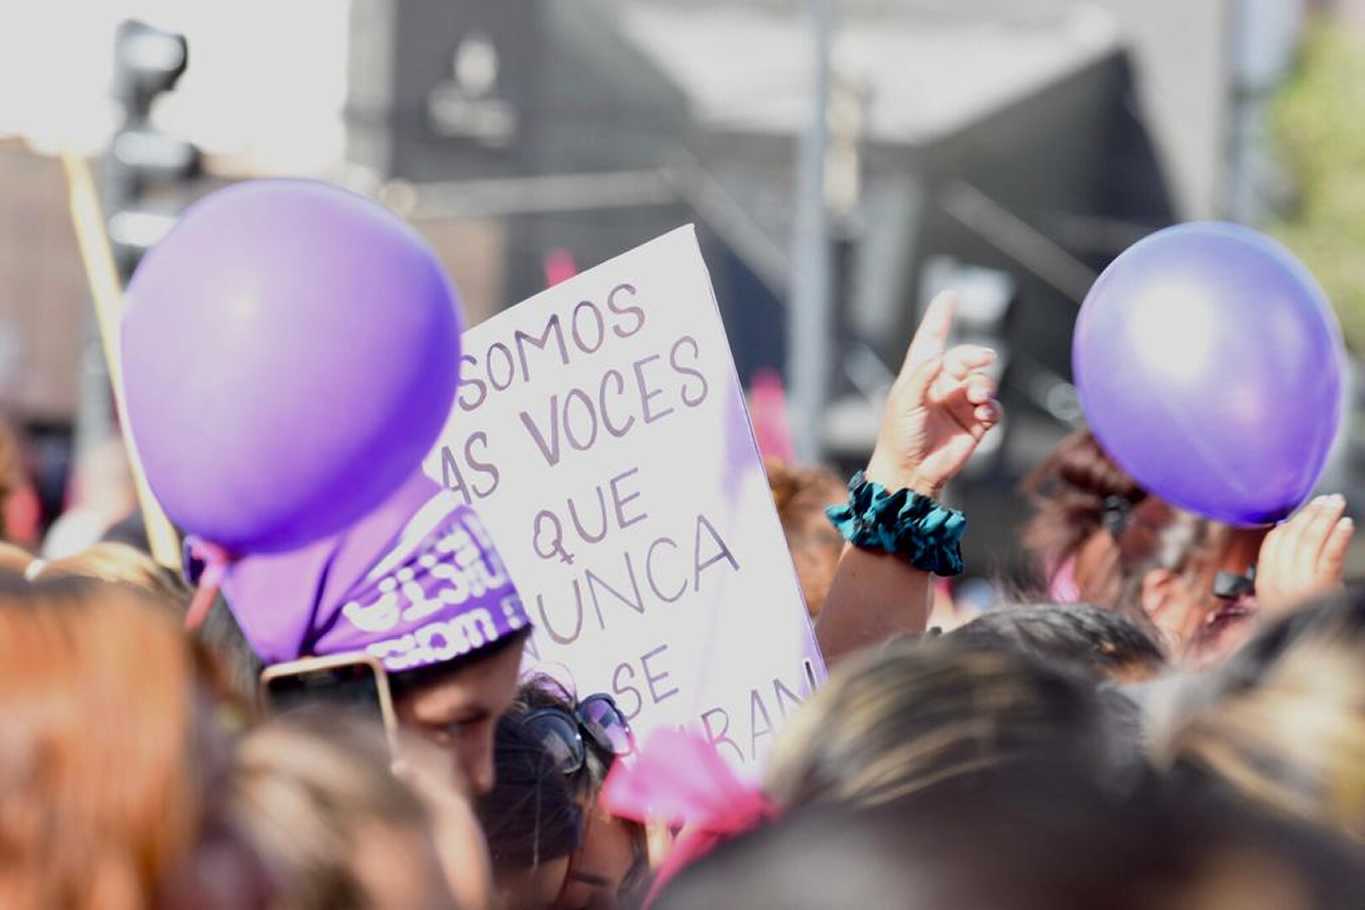 La demanda es el cese de femicidios (foto Matías Subat)